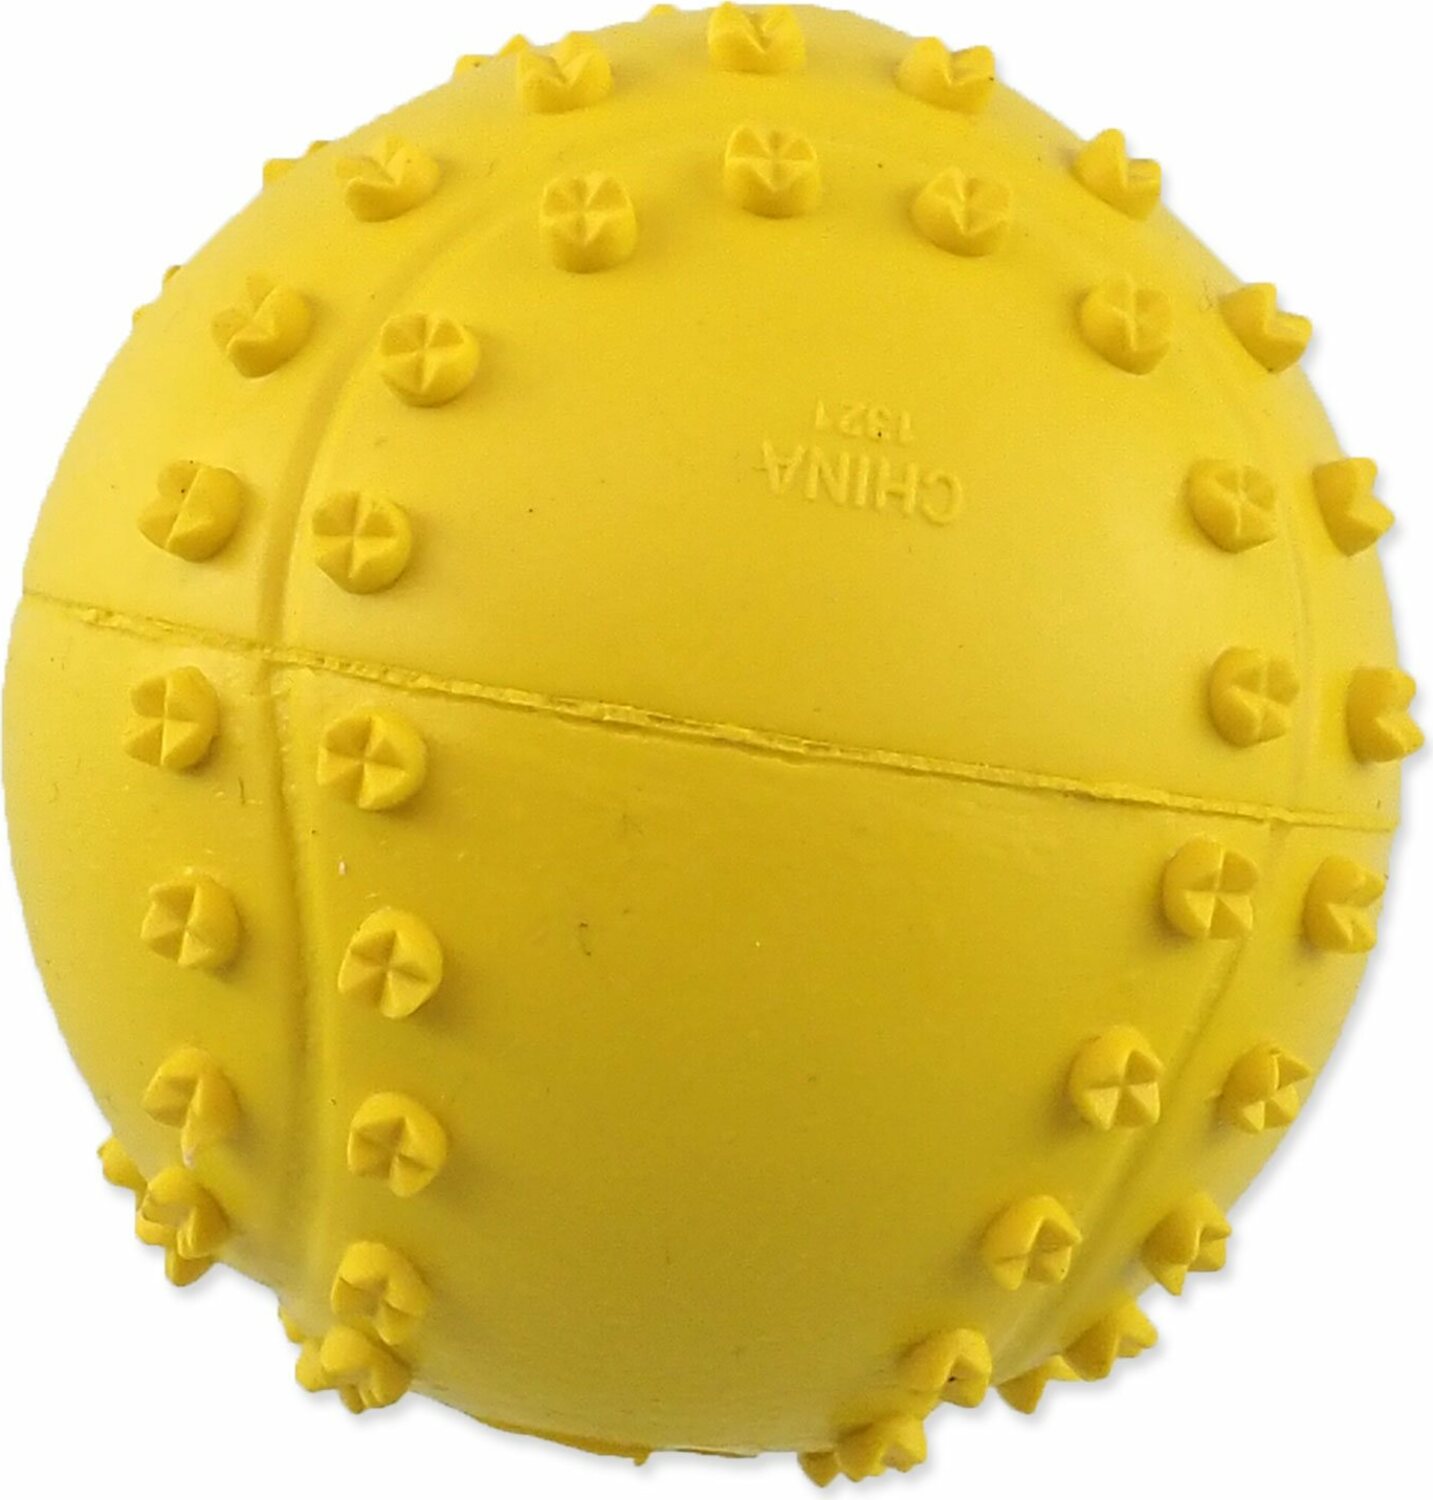 Hračka Dog Fantasy míč tenis s bodlinami pískací mix barev 6cm